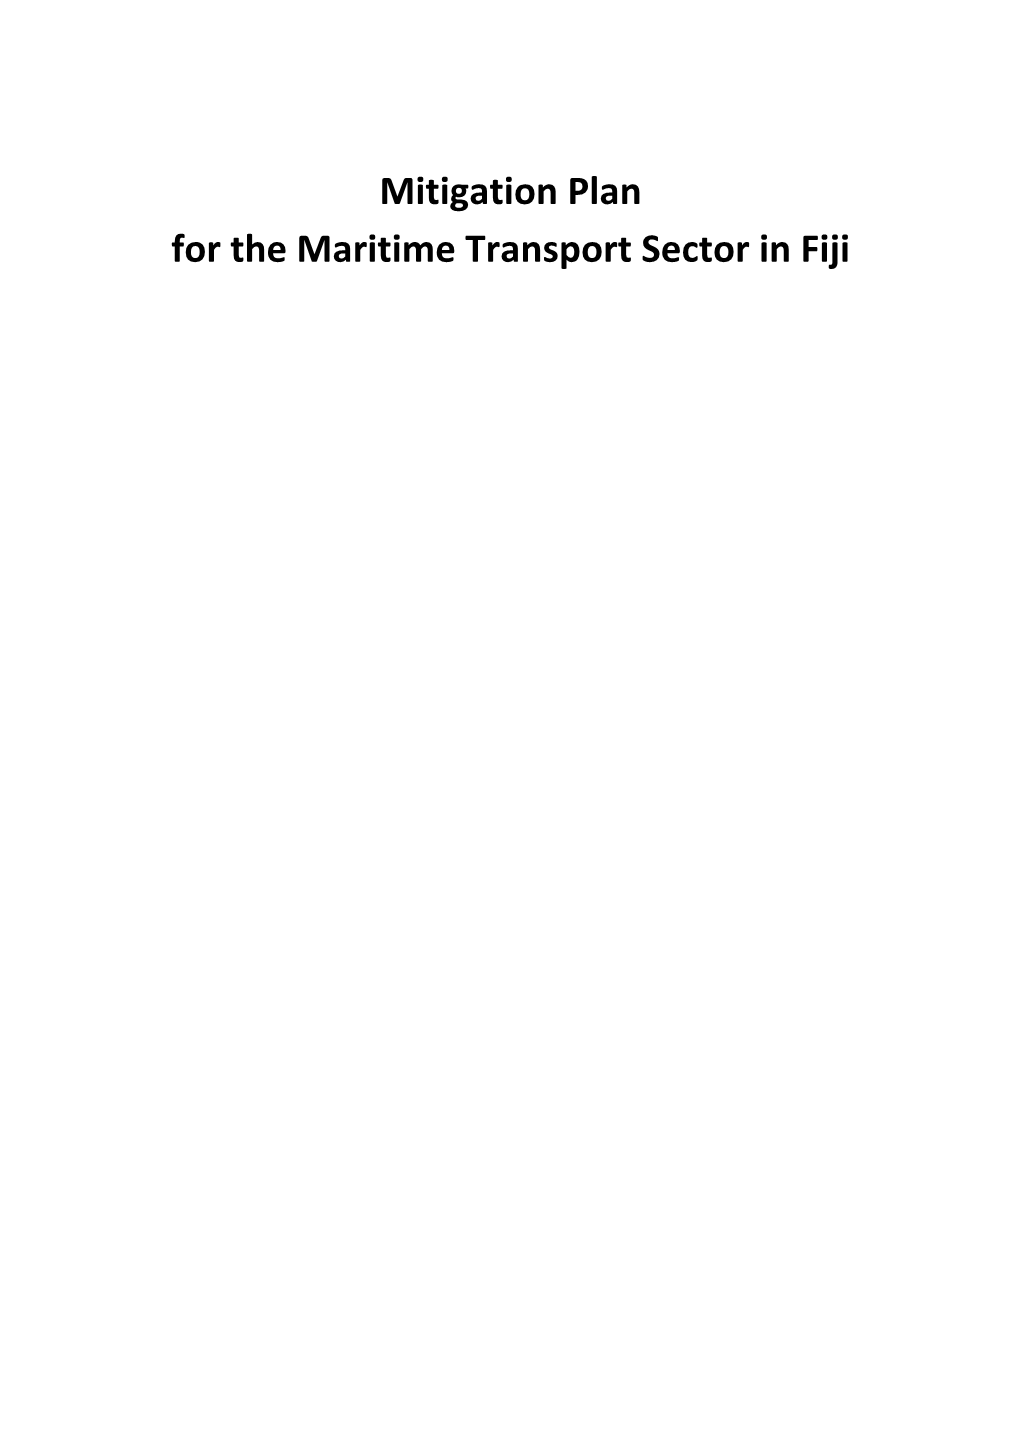 Fiji Maritime Mitigation Plan